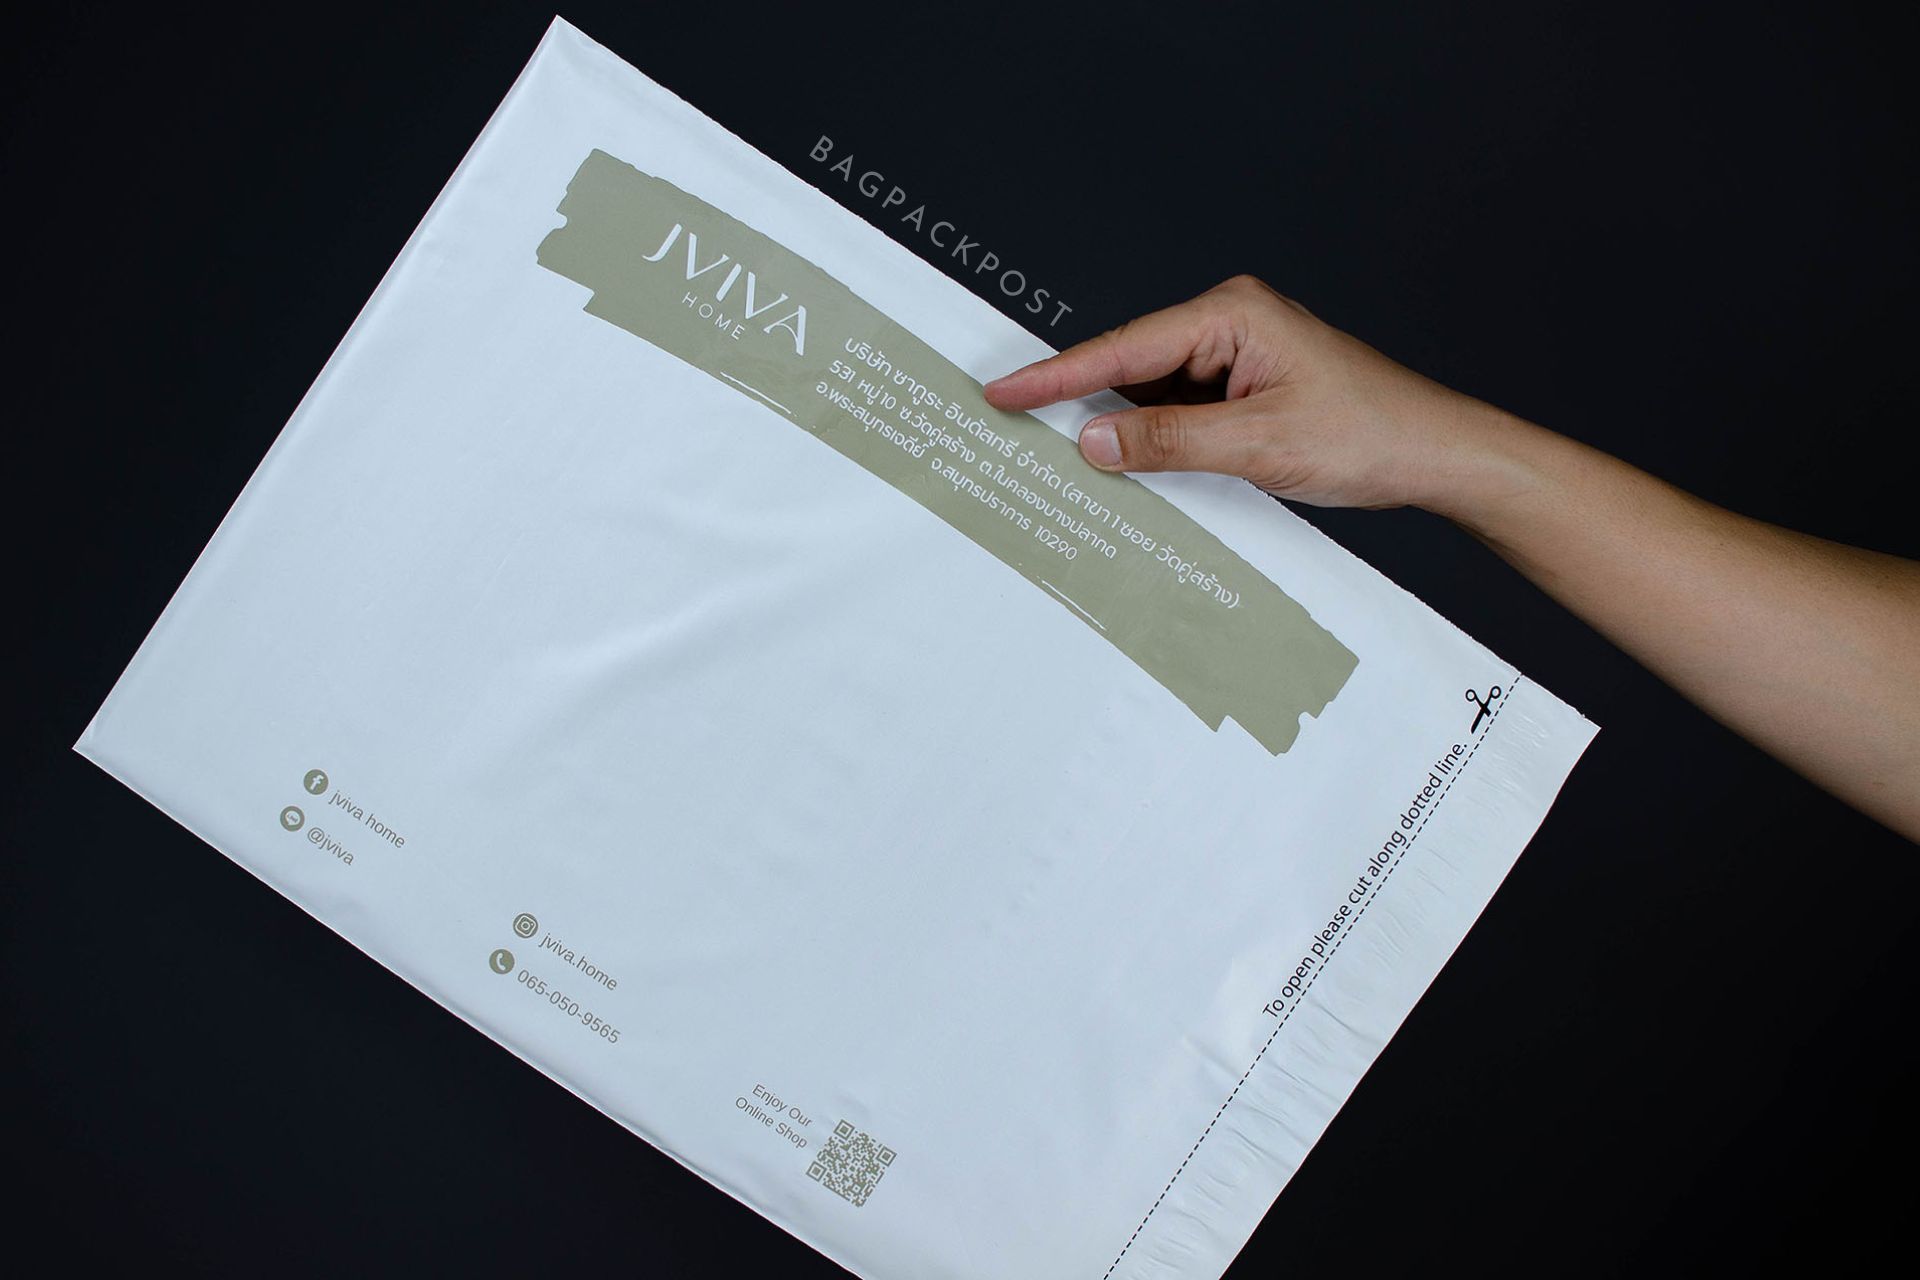 ผลิตถุงไปรษณีย์ ซองไปรษณีย์พิมพ์ลาย jviva ซองไปรษณีย์สีขาว ถุงไปรษณีย์พิมพ์ลาย 3 BagPackPost